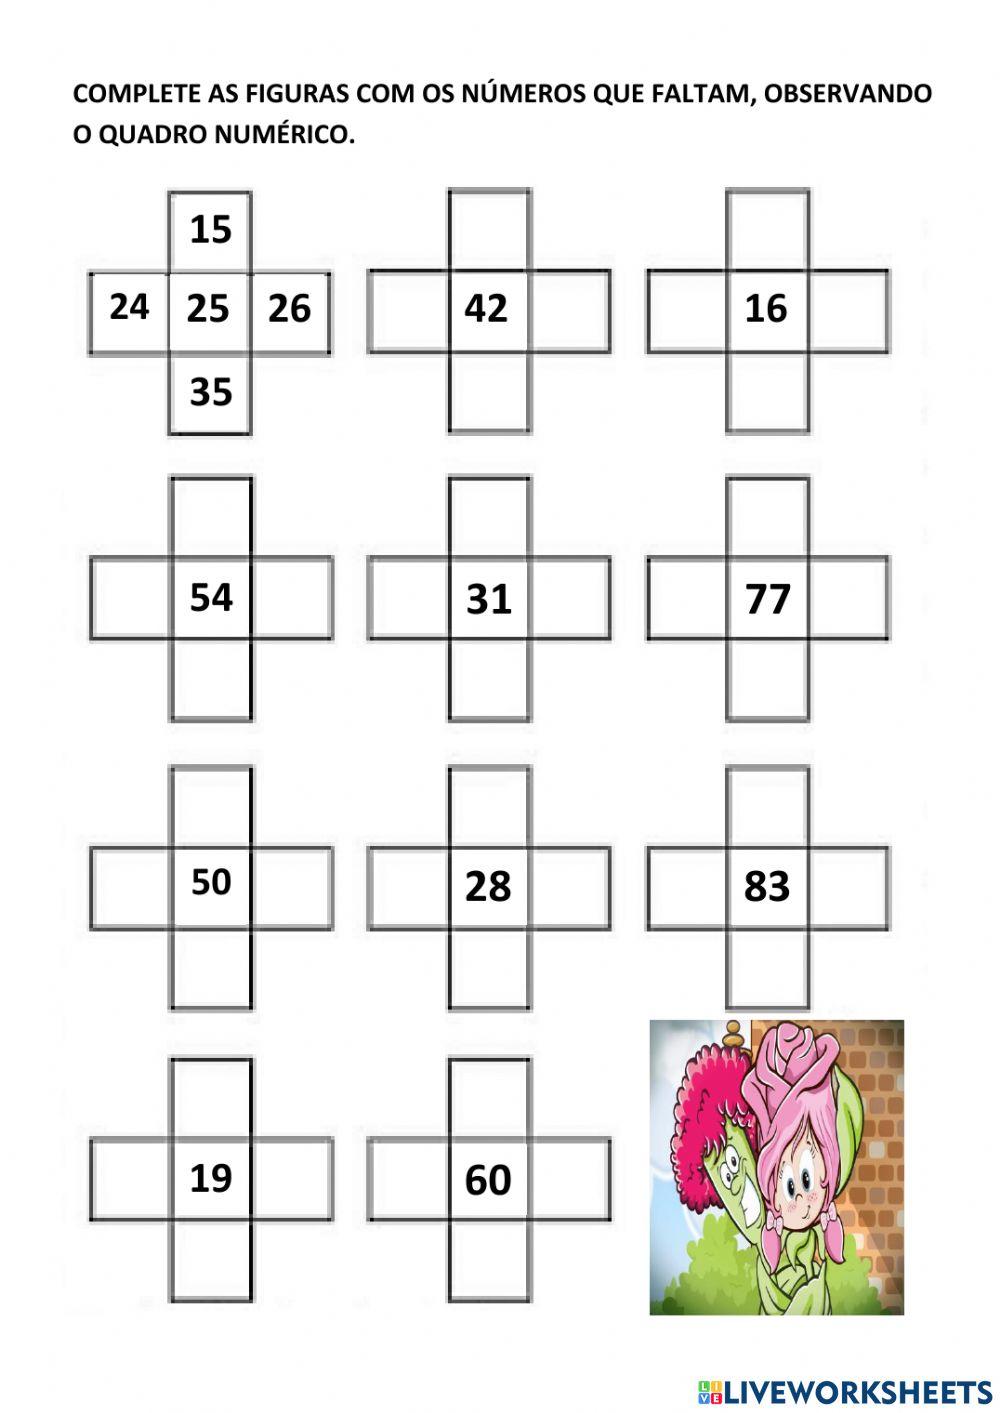 Anote nos quadros os números que completam a sequência de acordo com o quadro numérico.